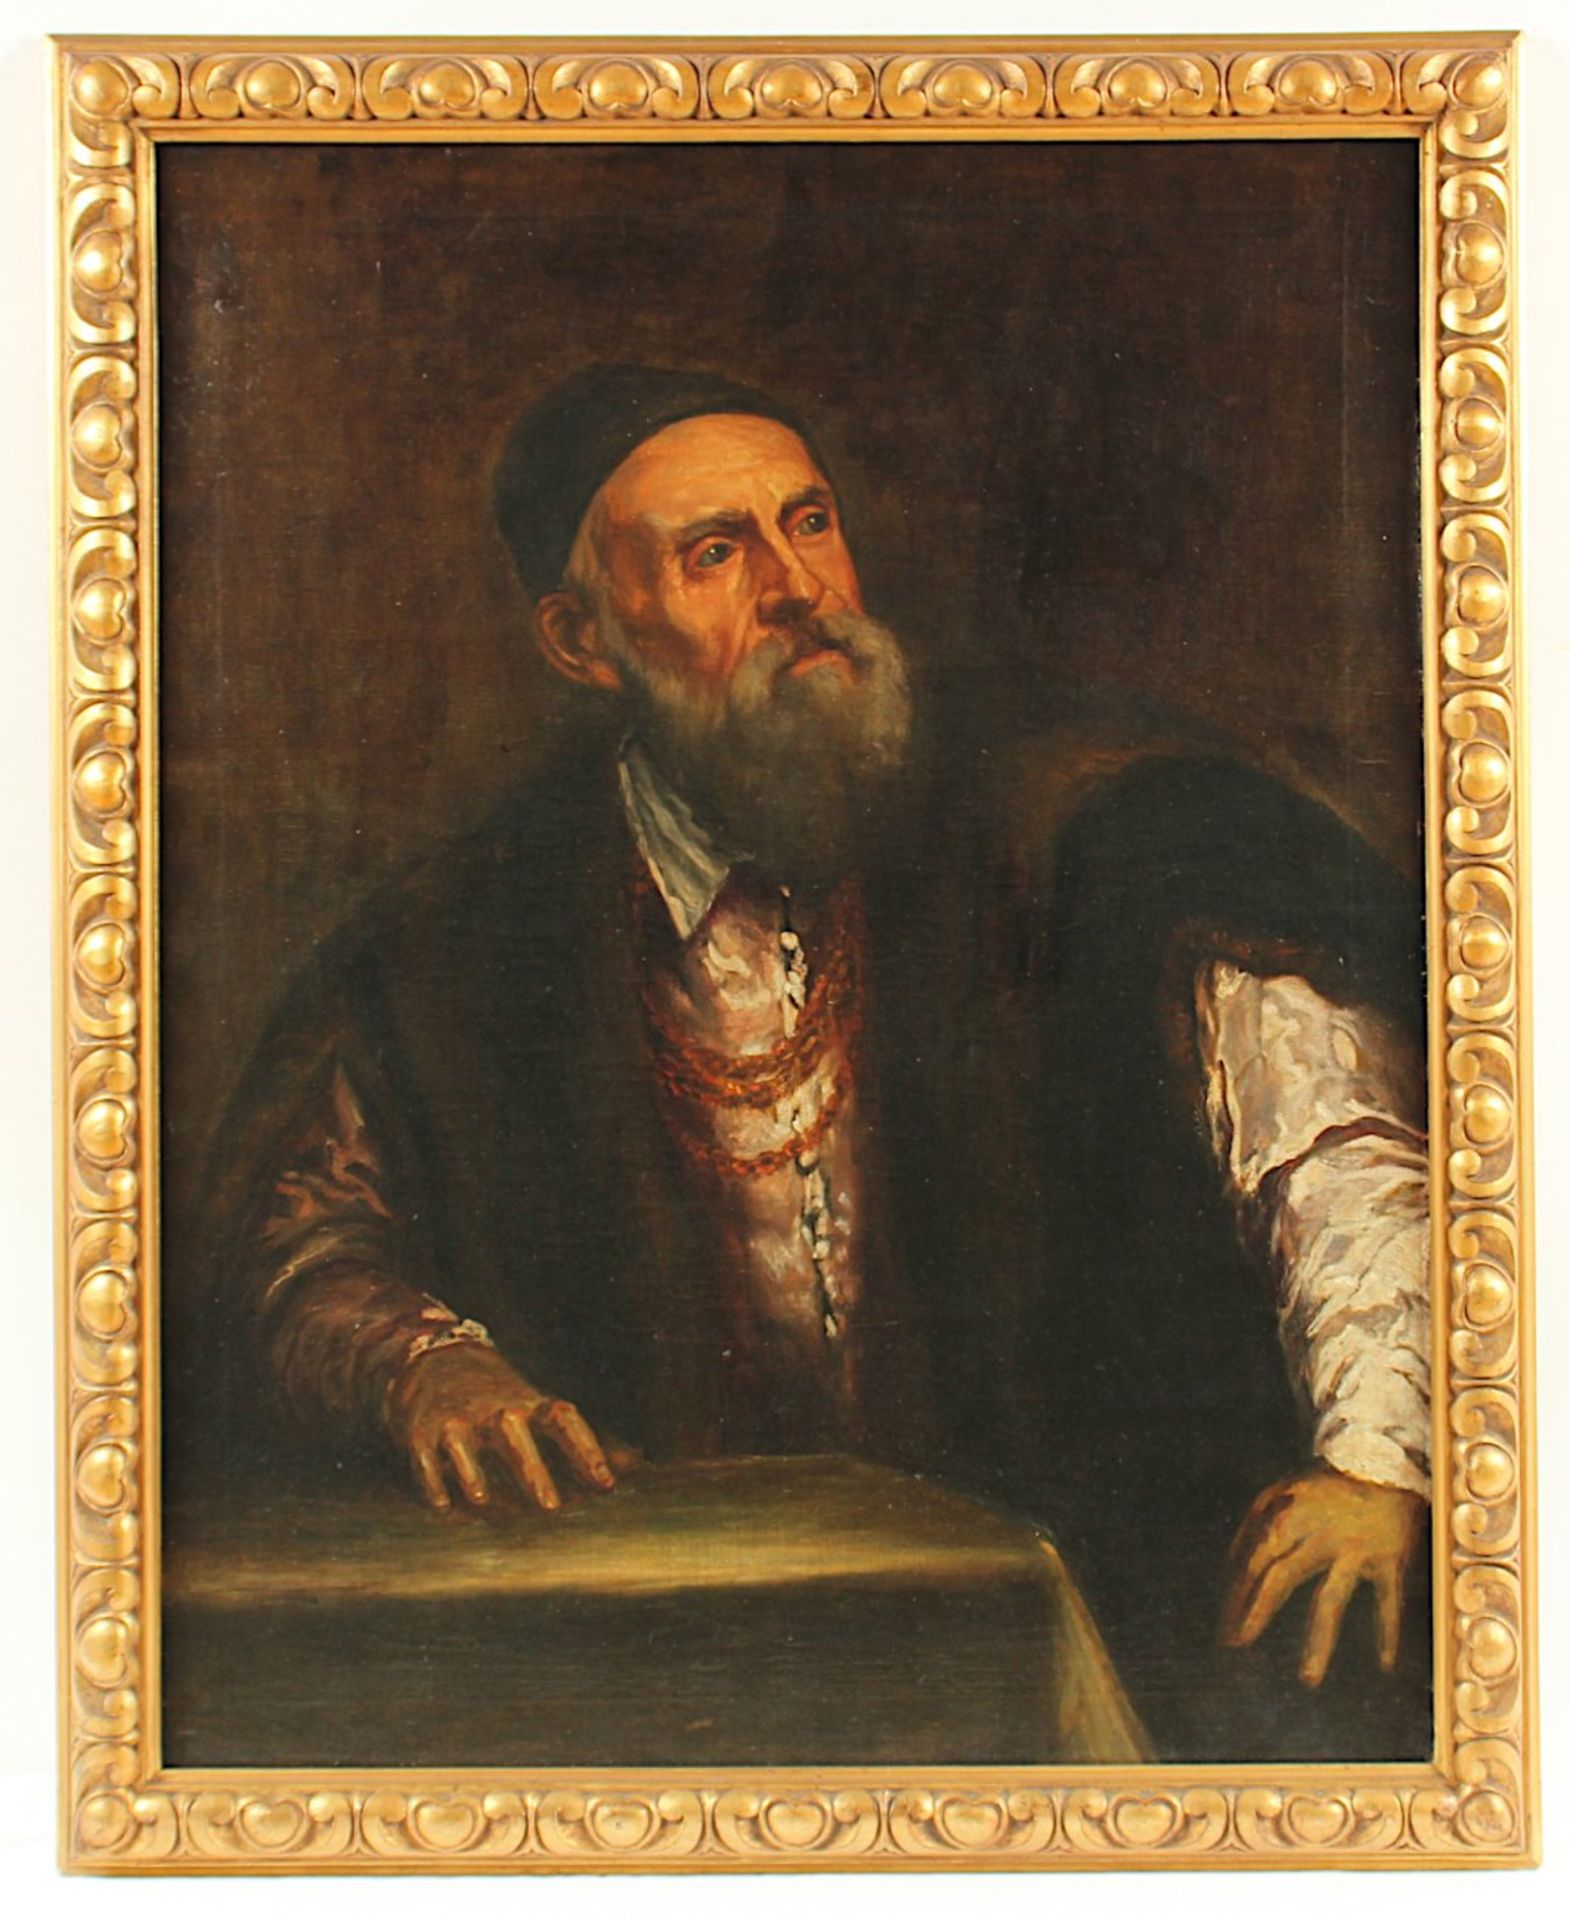 TIZIAN (1488/90-1576), Kopie E.19.Jh. nach dem Original von 1546/47 in der Berliner